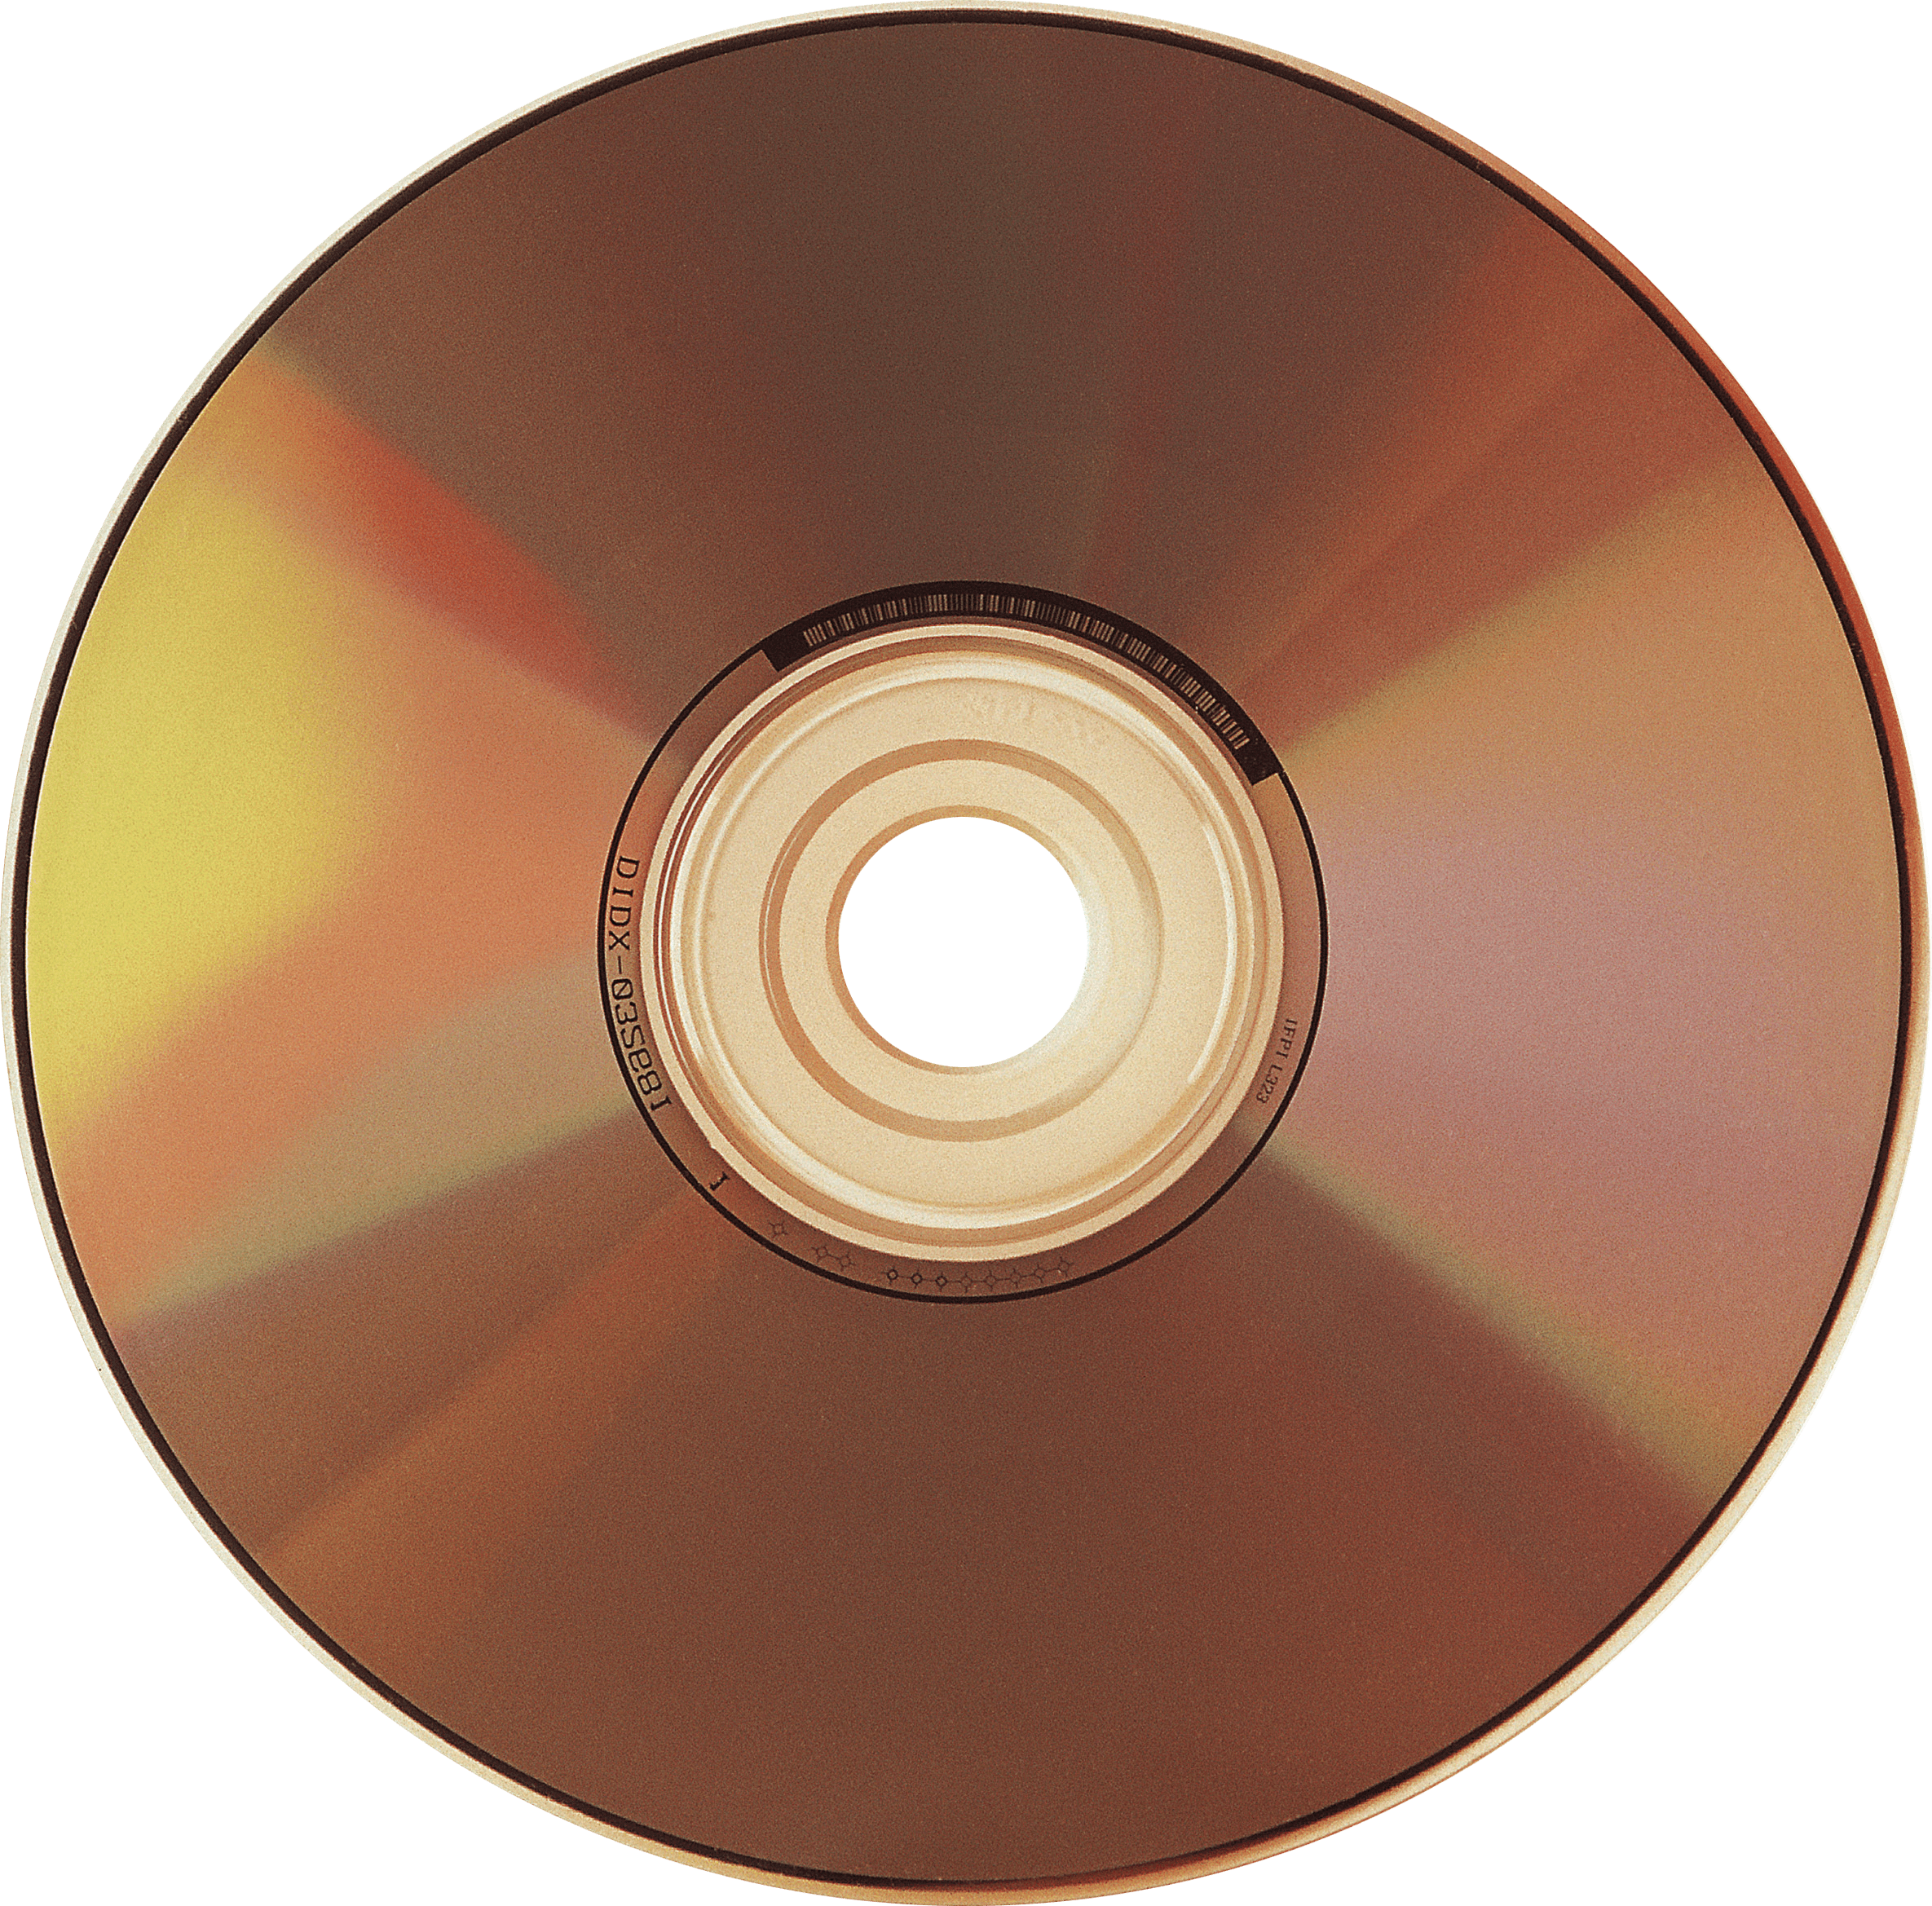 CD - Compact Disk (компакт диск). CD (Compact Disc) — оптический носитель. CD-R DVD. Диски а..